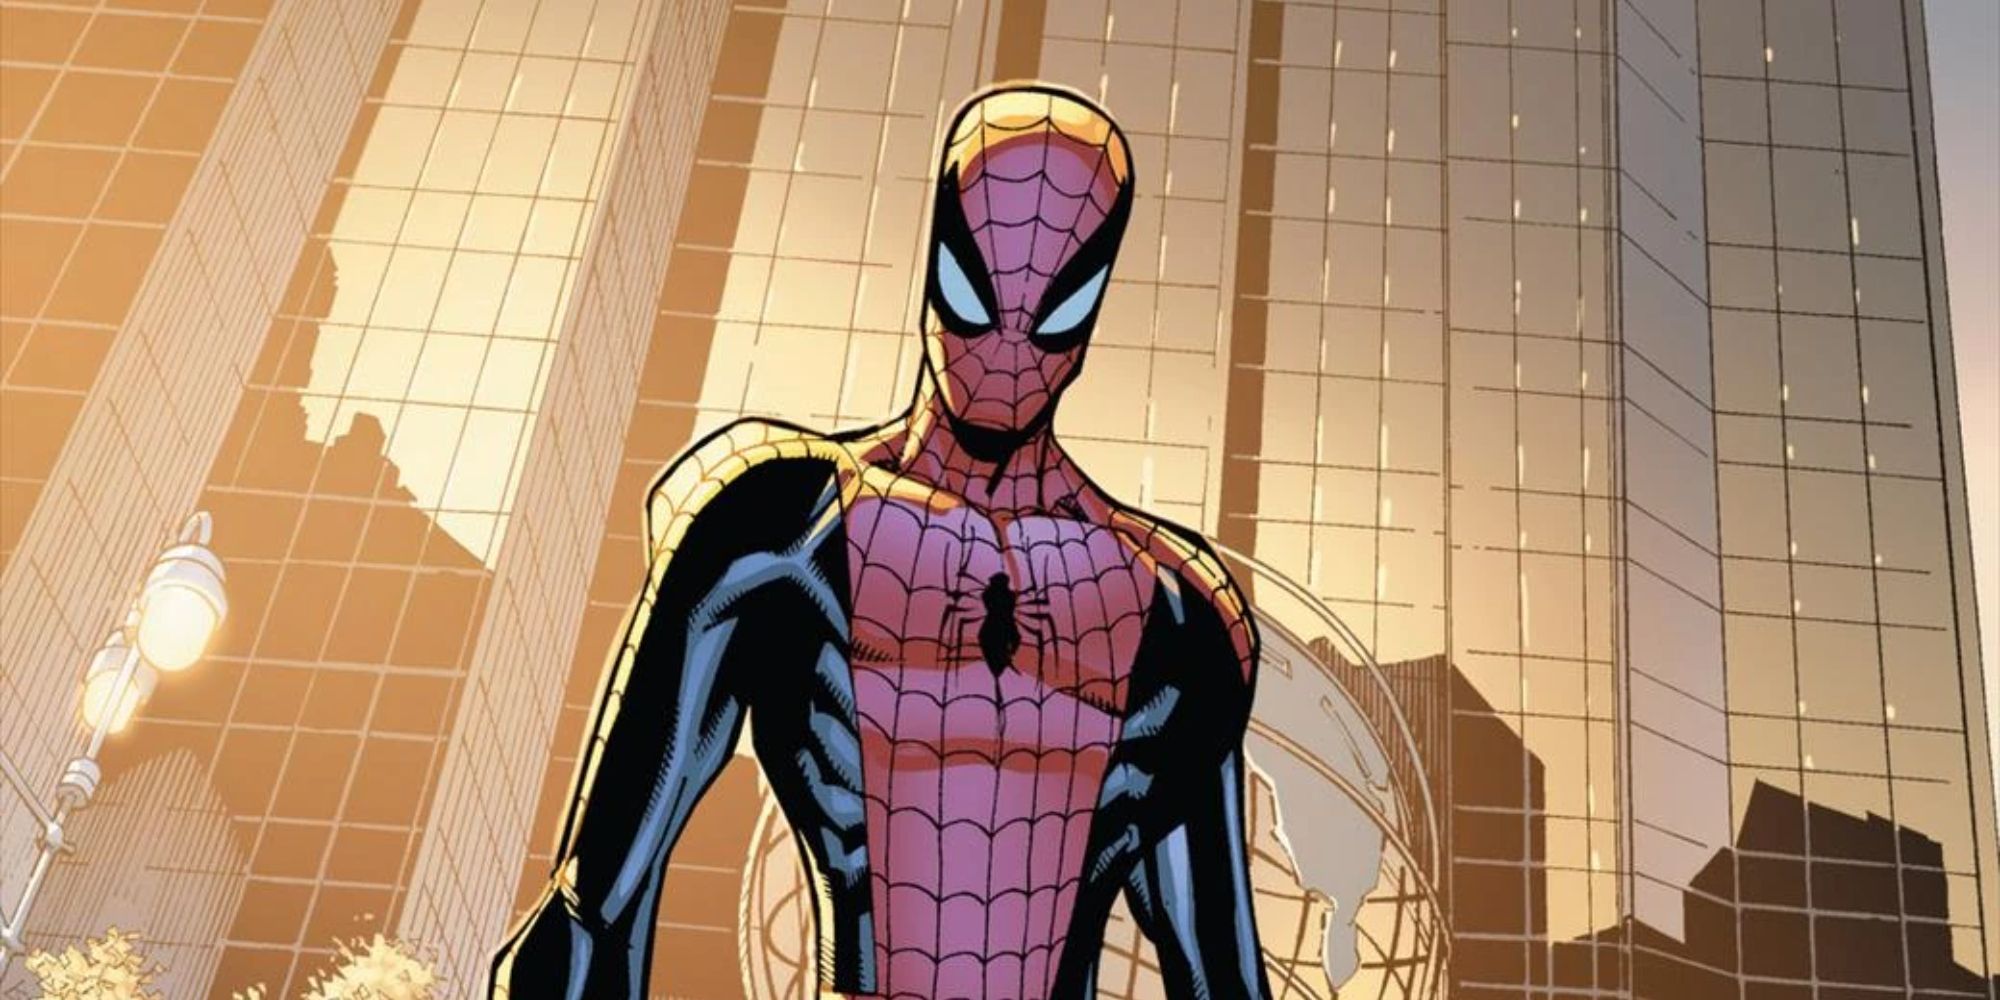 Otto Octavius in Spider-Man's body